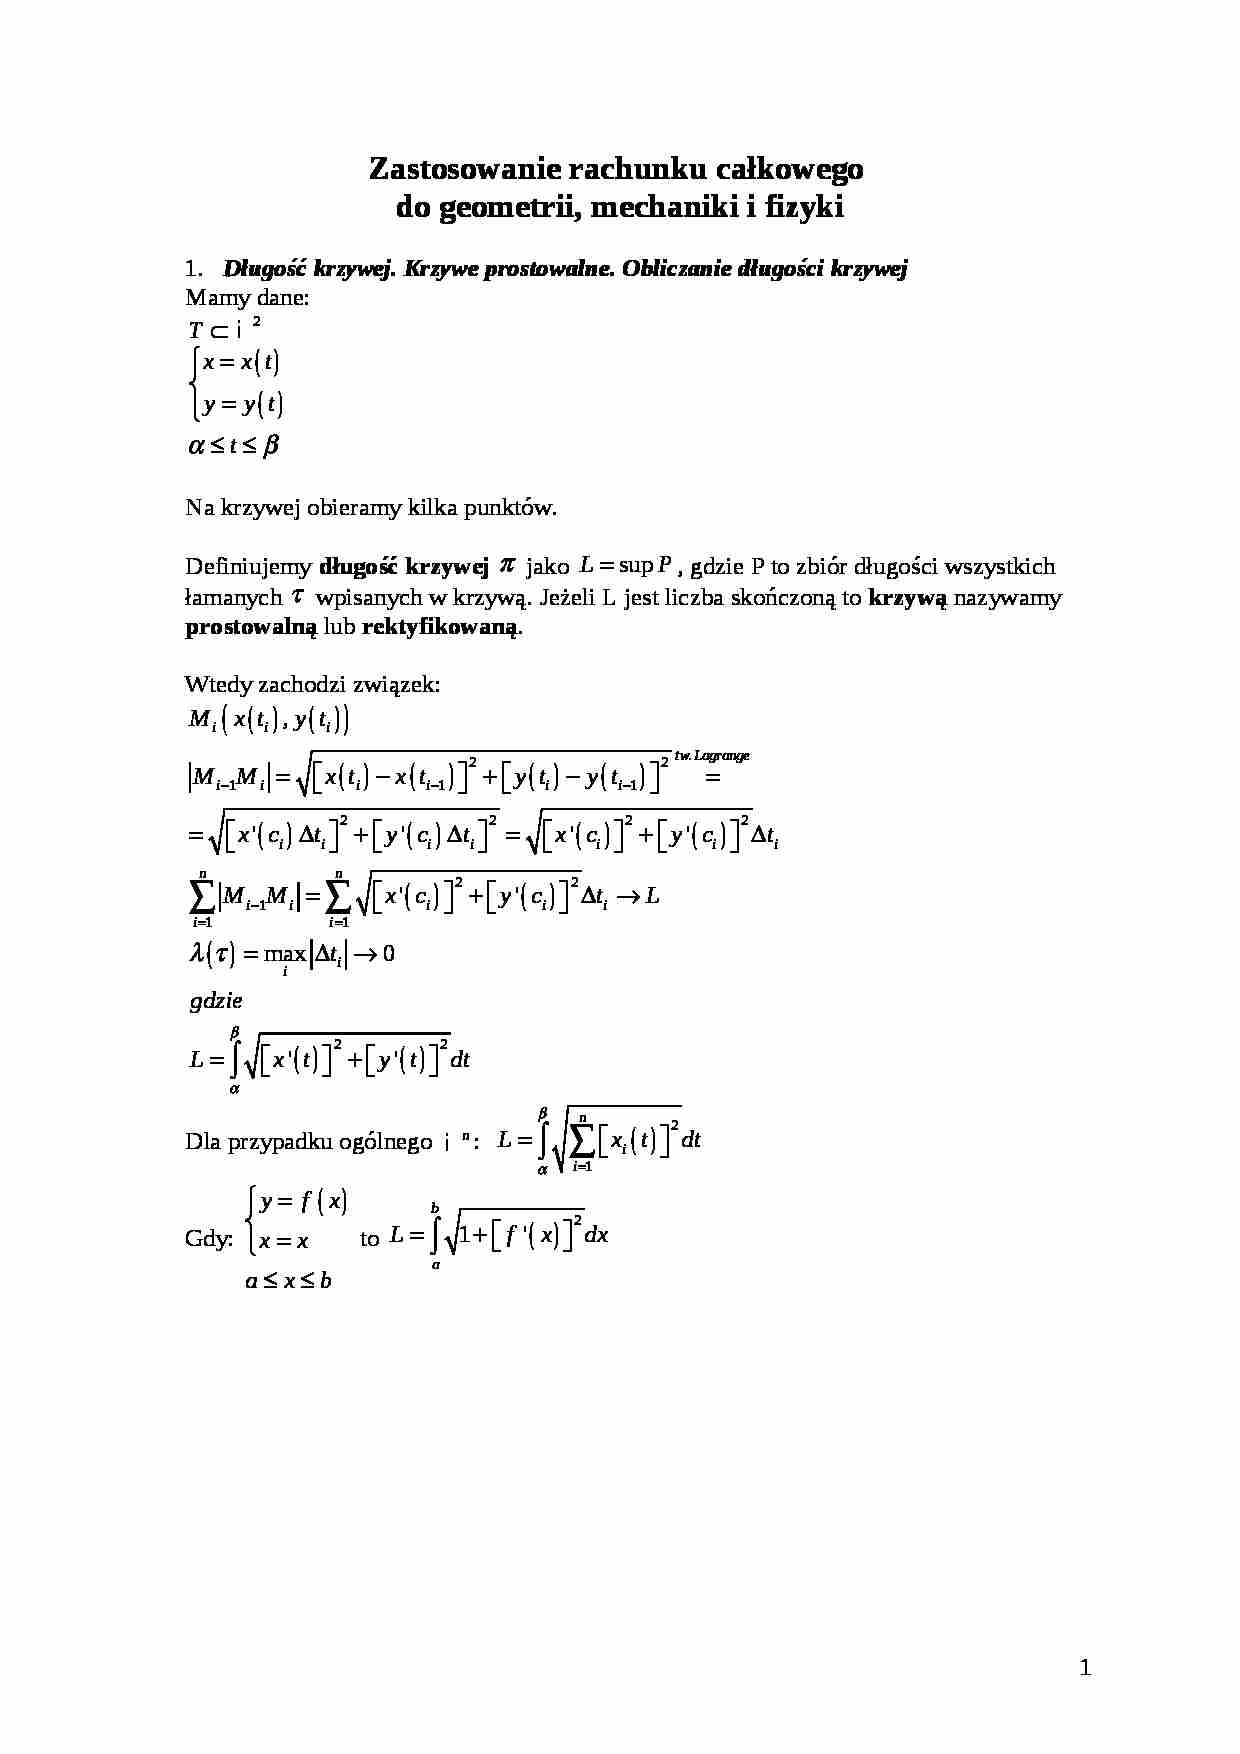 Zastosowanie rachunku całkowego do geometrii, mechaniki i fizyki - strona 1